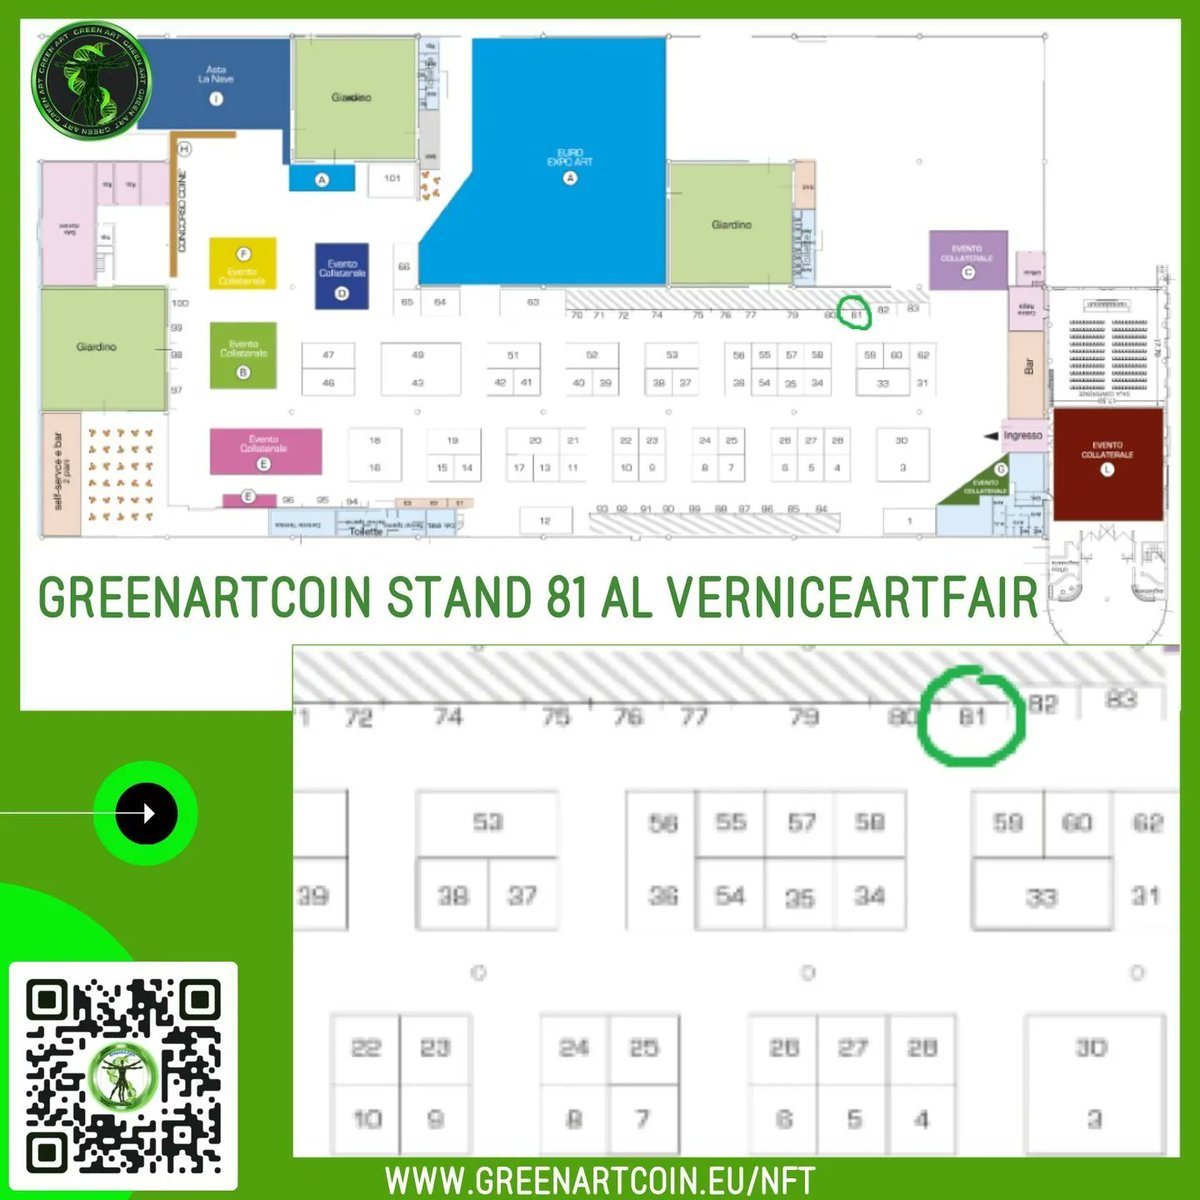 #Greenartcoin é ospite della fiera d'arte #VERNICEARTFAIR
Vi aspettiamo presso il nostro stand a #FORLÌ 17-19 MARZO #arteitaliana #arte #artistiitaliani #nftartita #nftarte #nftartitalia #evento #eventoarte #Forlìarte #forlìnft #arteitaliananft #blockchain